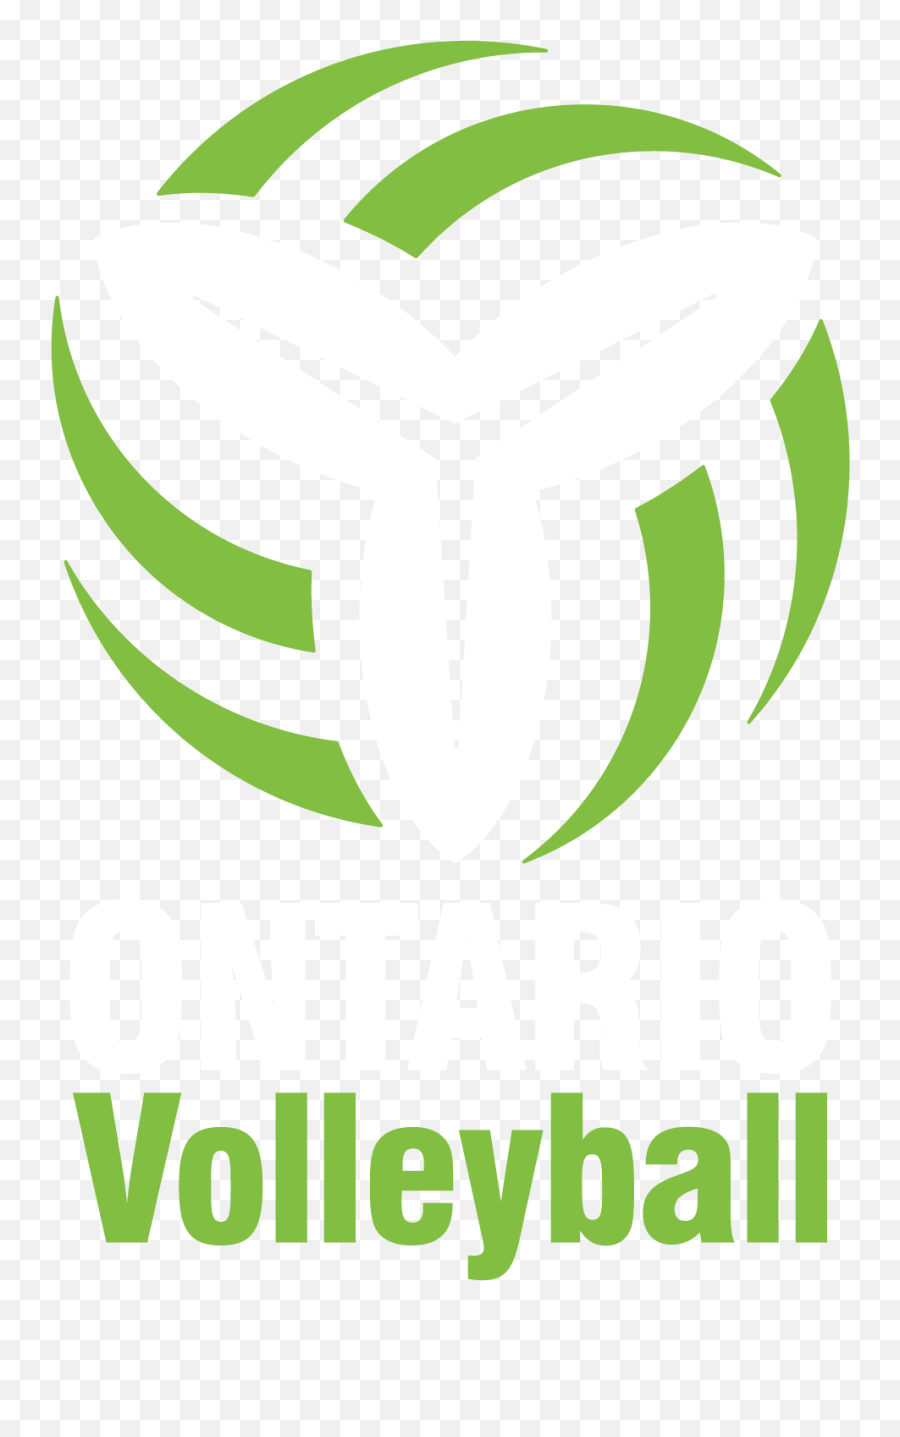 Ontario Volleyball Association - Ontario Volleyball Association Png,Volleyball Logo